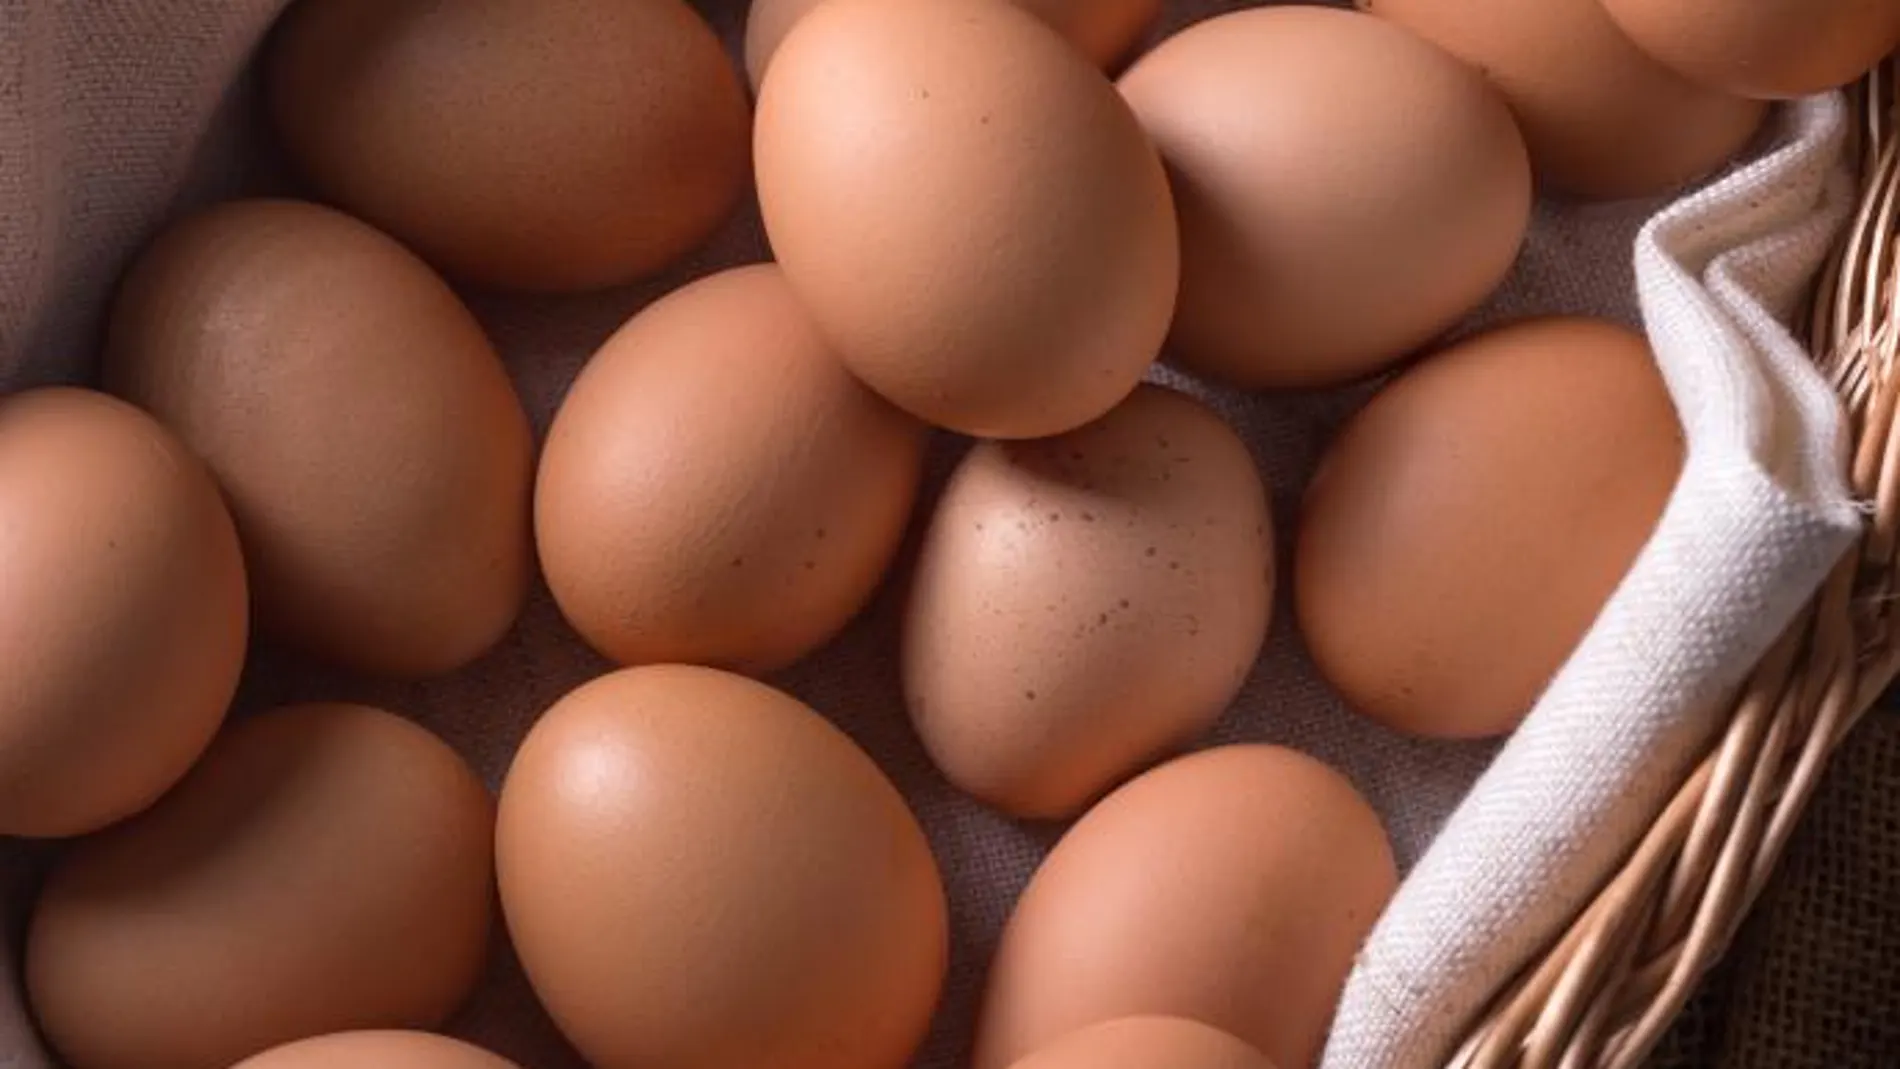 Cataluña retira una partida de 50 kilos de huevos contaminados con fipronil